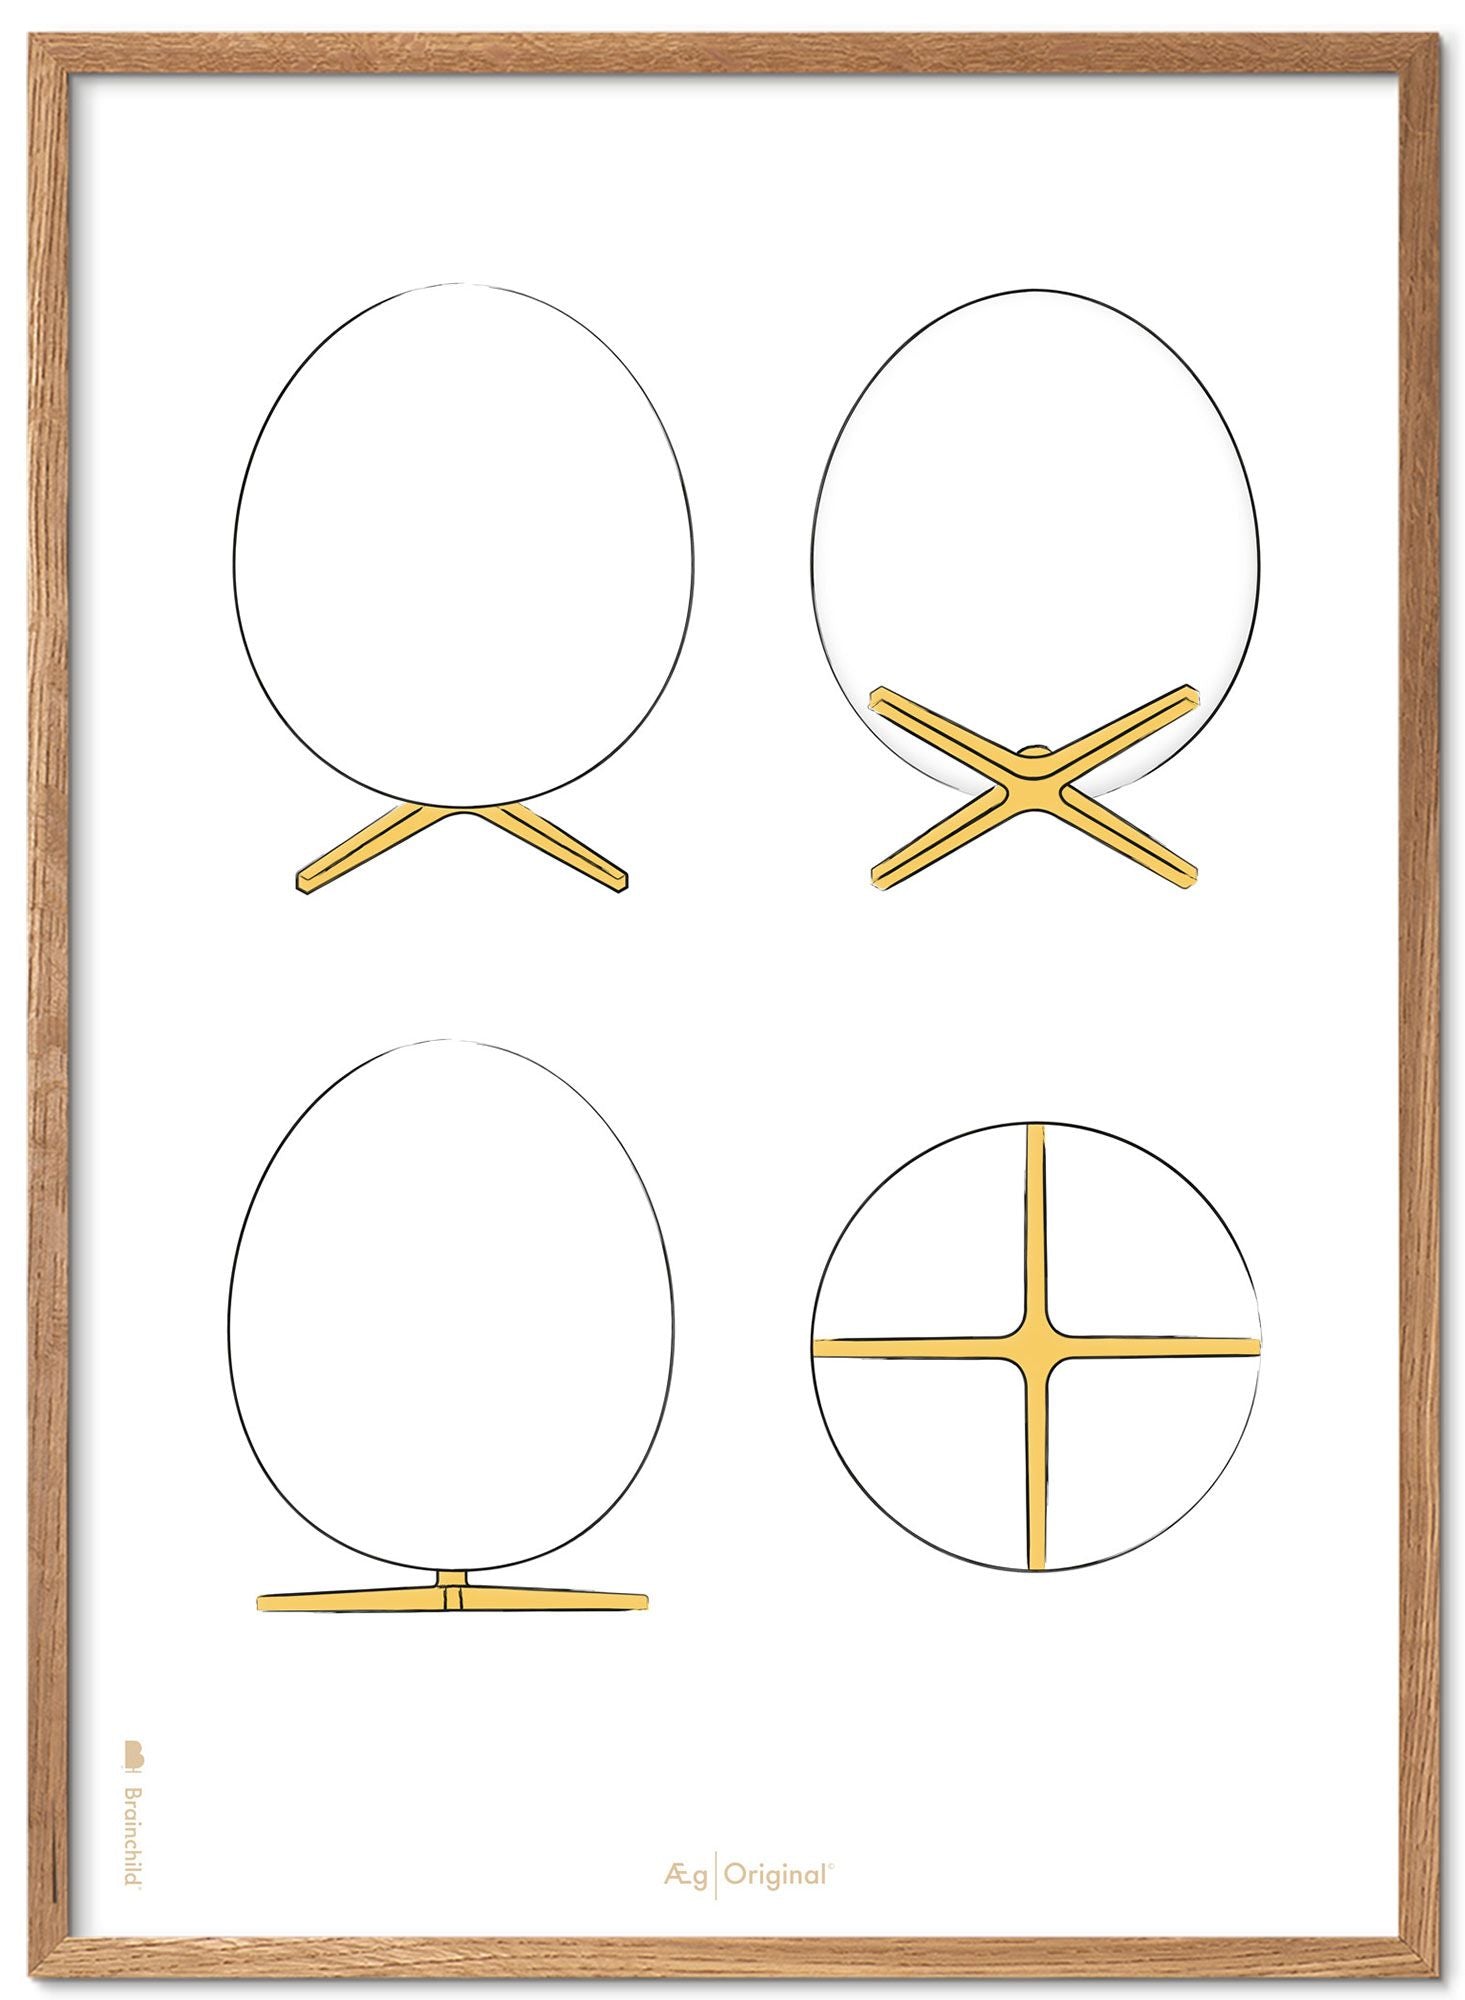 Brainchild Cadre pour affiche The Egg Design Sketches, en bois clair, 30x40 Cm, fond blanc